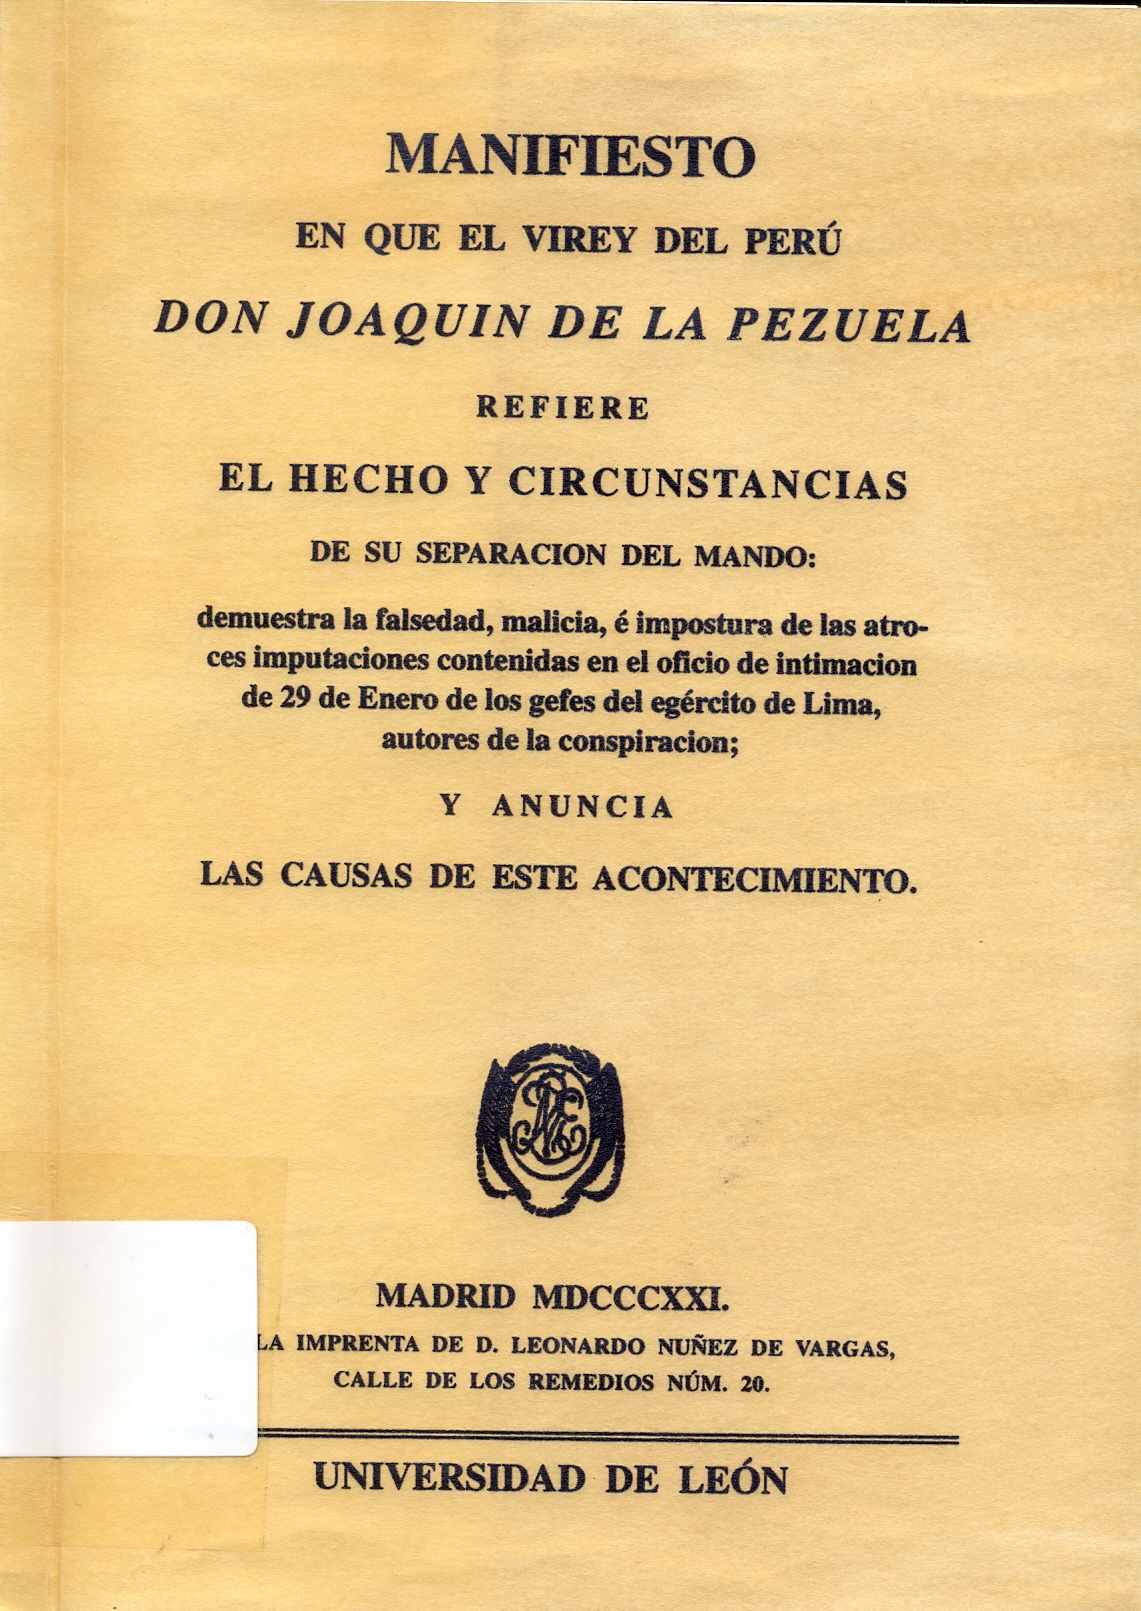 Imagen de portada del libro Manifiesto en que el virey [sic] del Perú, Don Joaquín de la Pezuela, refiere el hecho y circunstancias de su separación del mando